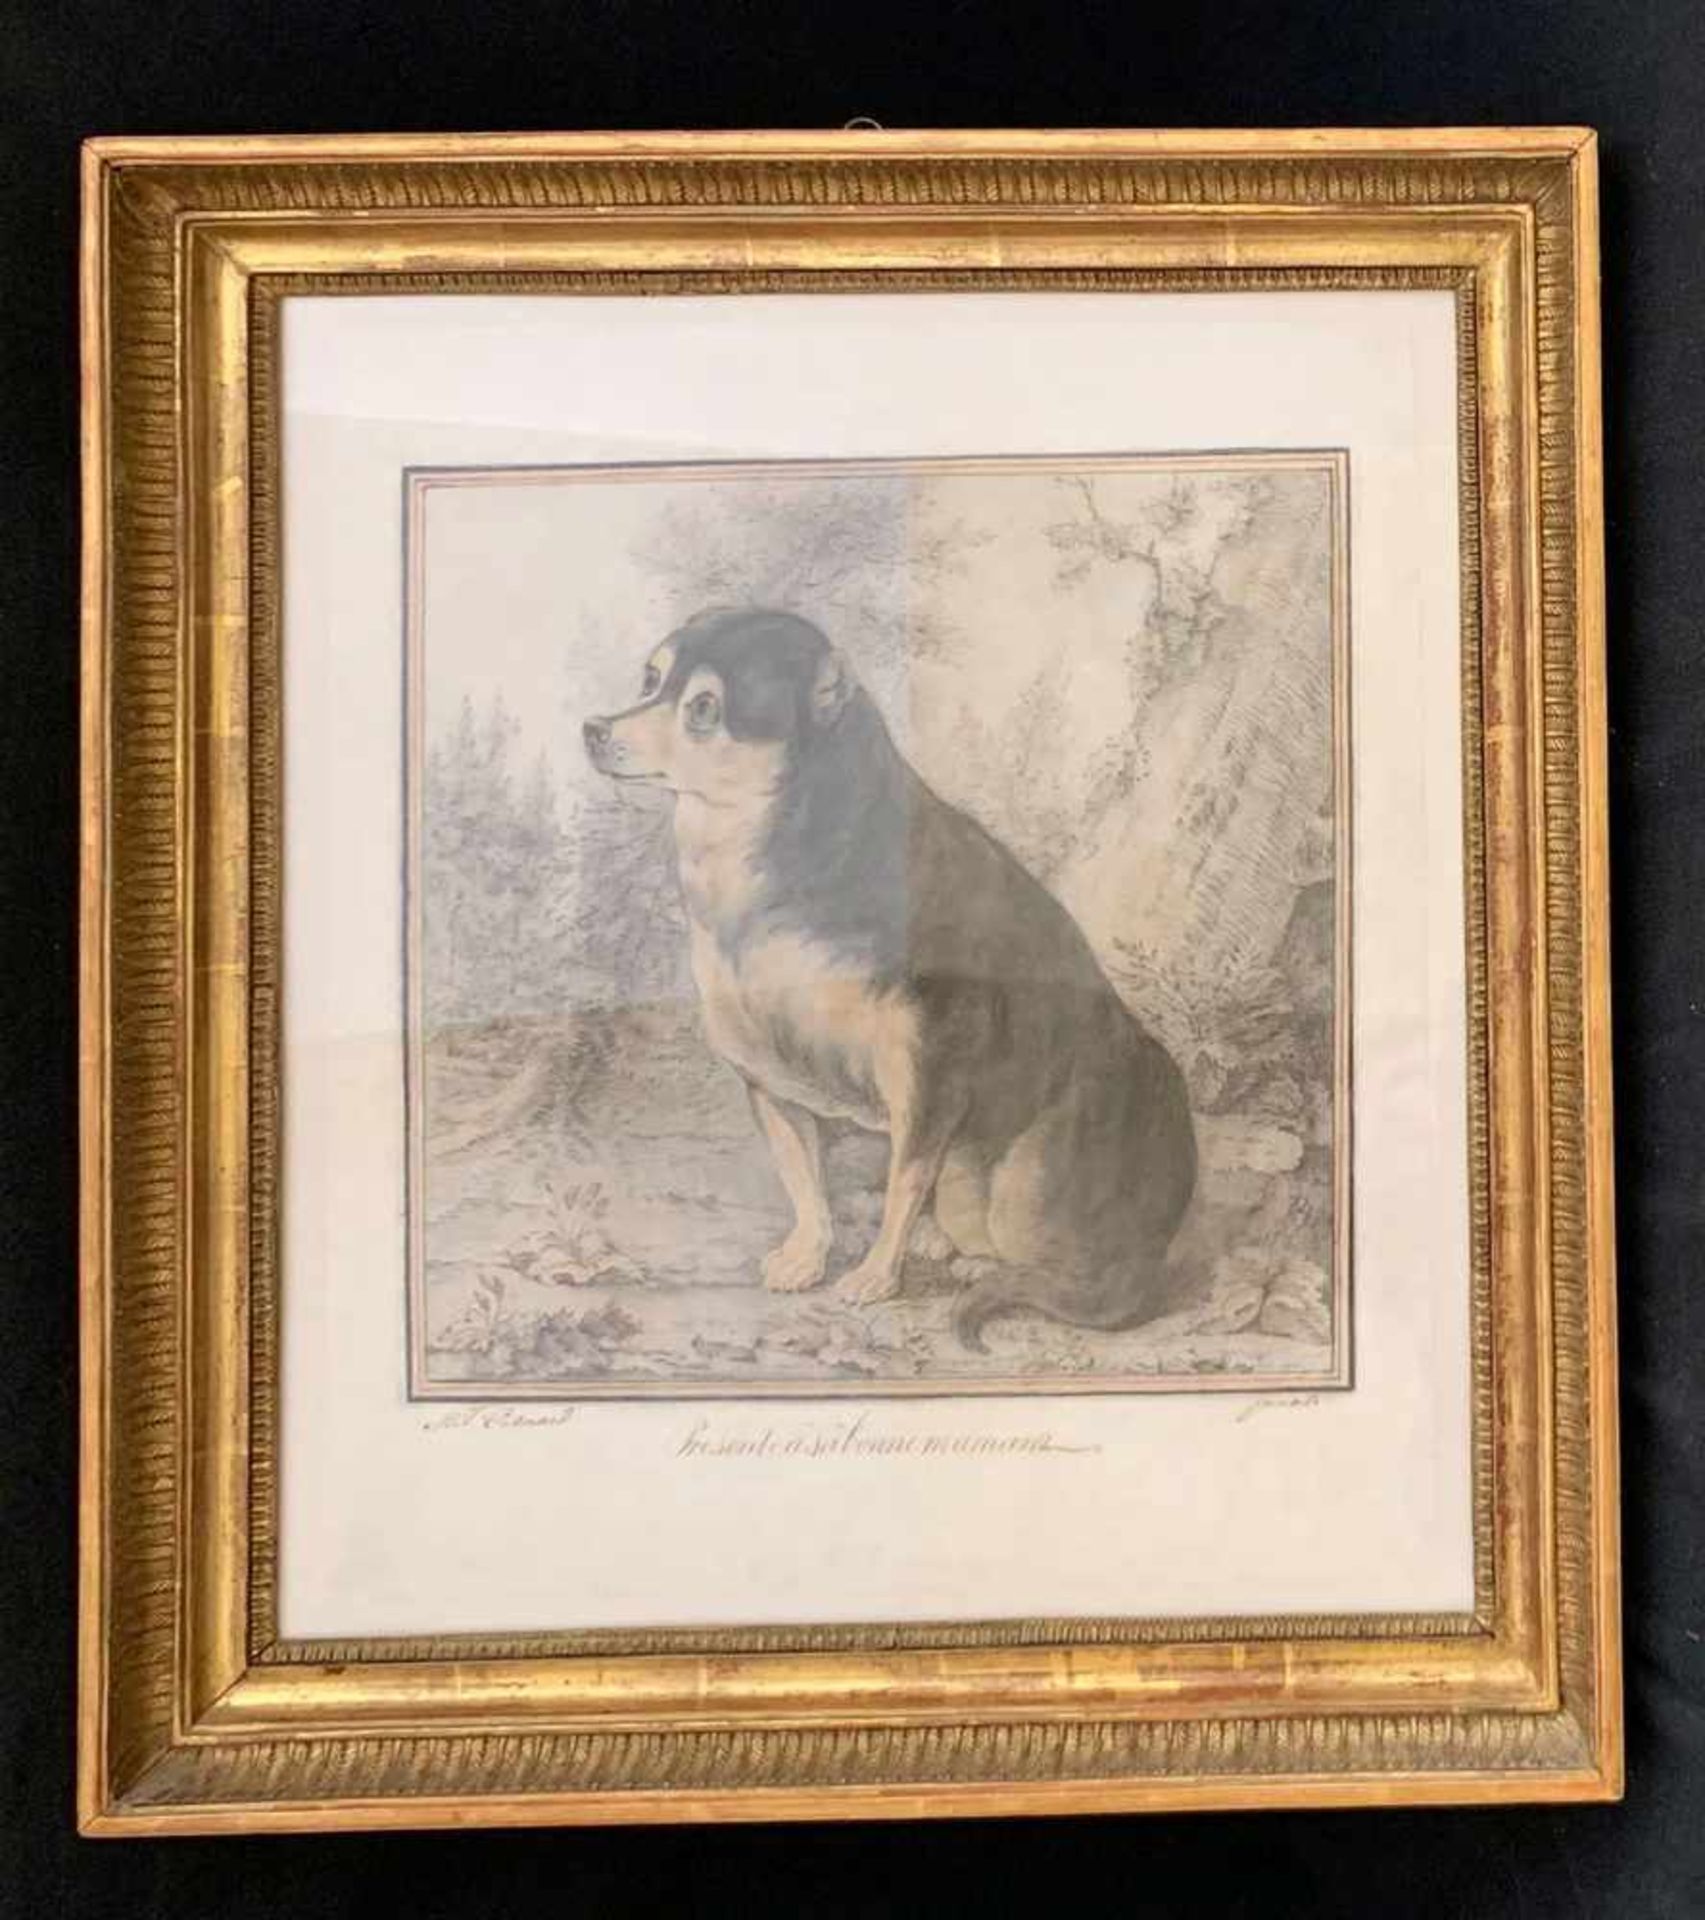 Cosnard. Porträt eines Hundes. Portrait of a dog. "Présenté à bonne maman." Zeichnung um 1820, - Bild 2 aus 5